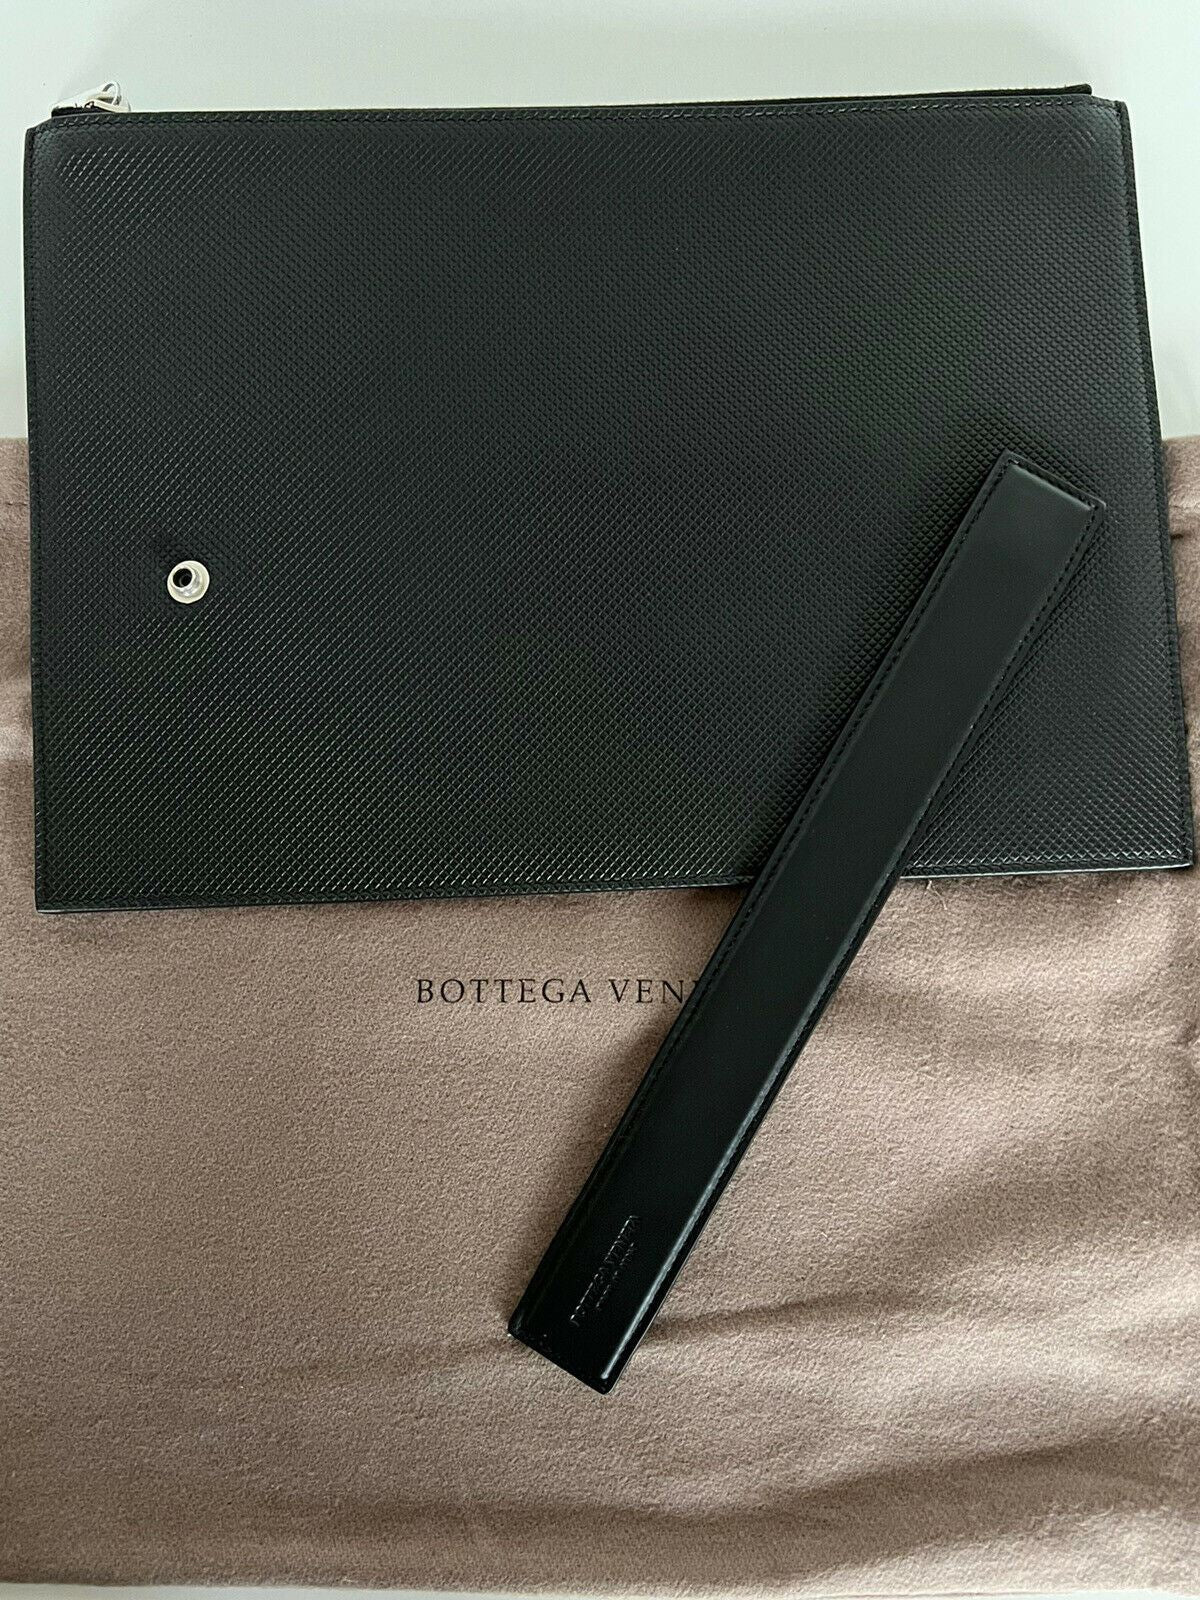 NWT $720 Bottega Veneta Marco Polo Black Leather Large Pouch 578213